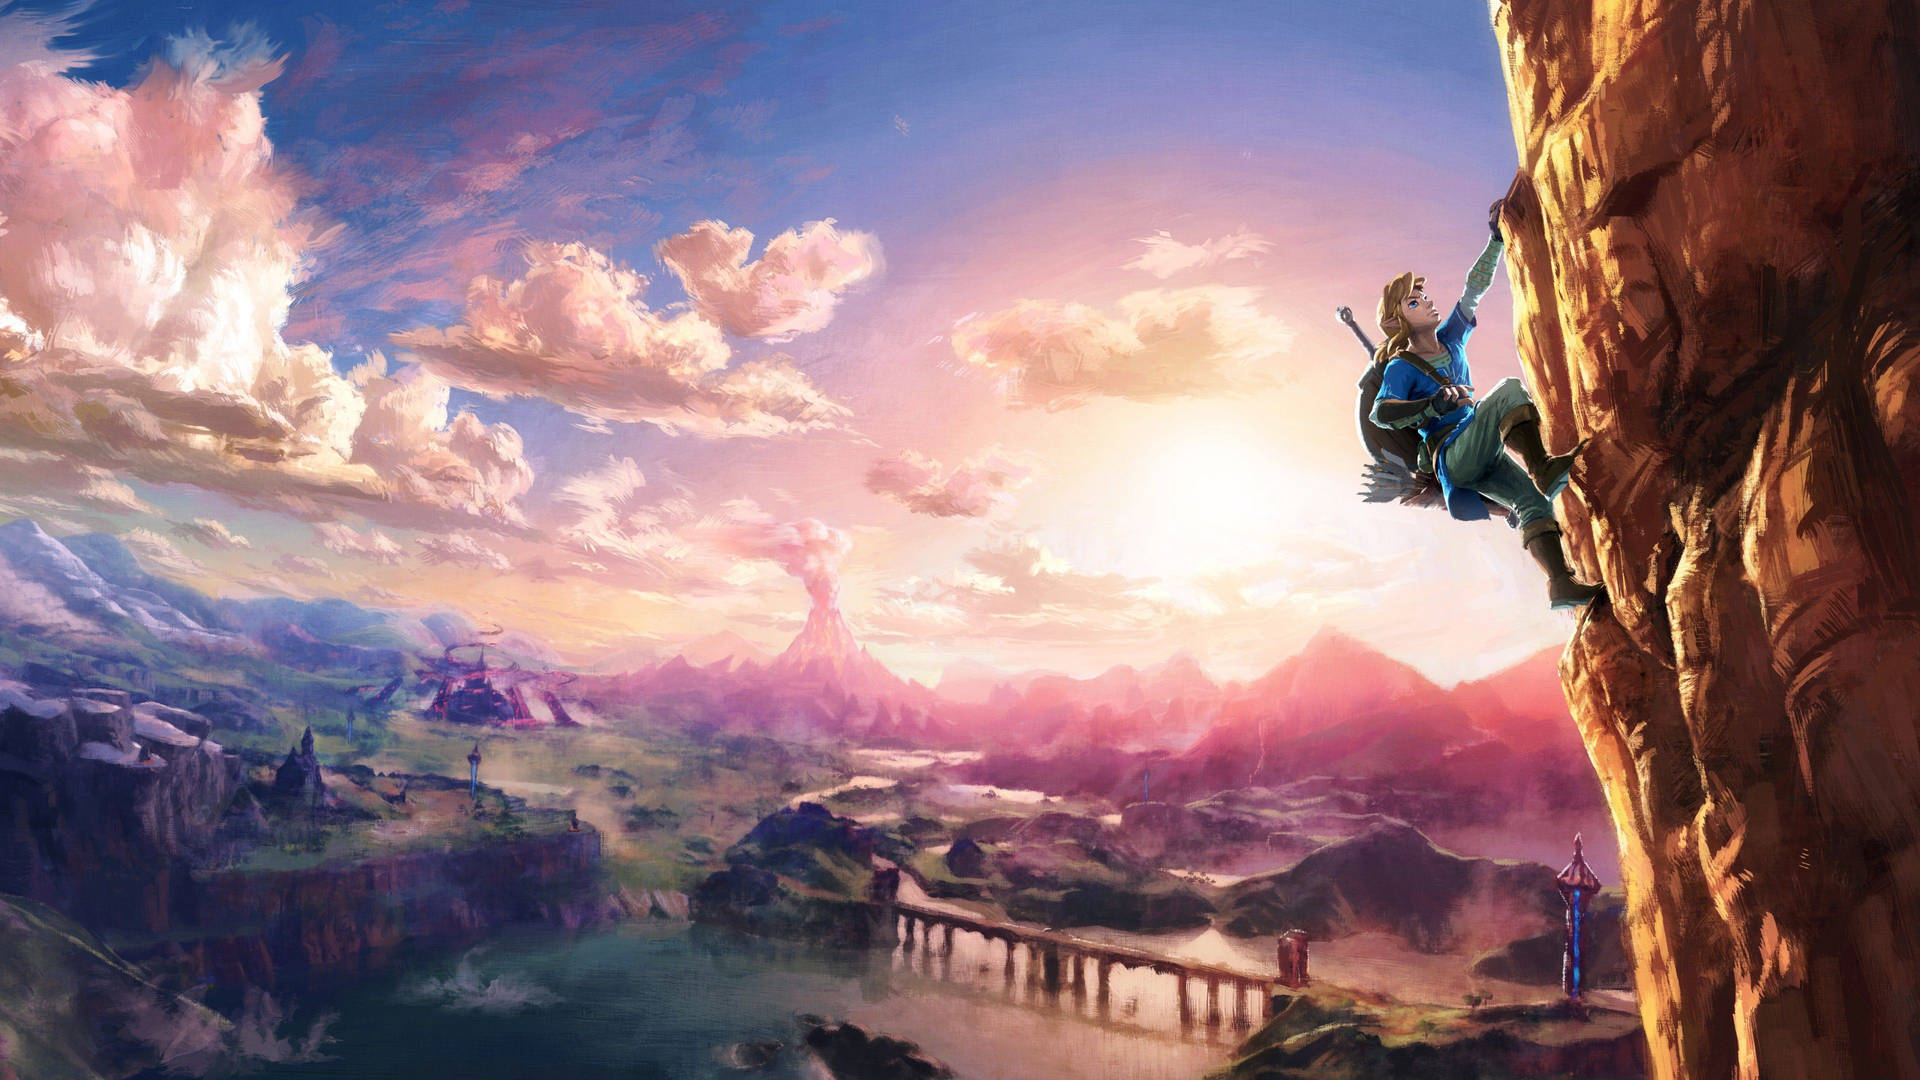 Legend Of Zelda Breath Of The Wild Background Wallpaper